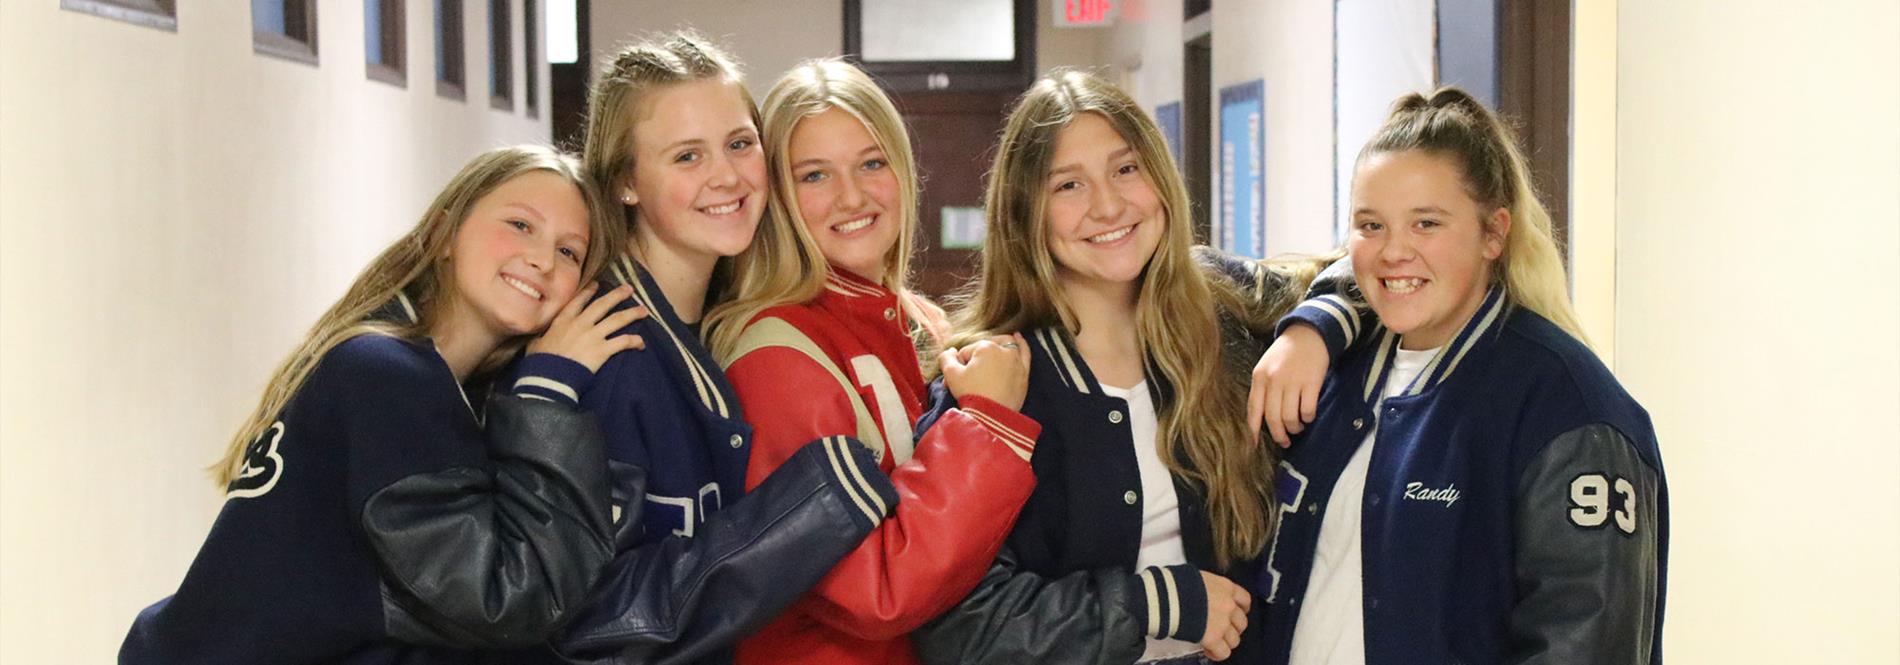 5 teenage girls posing in a hallway wearing letterman jackets.